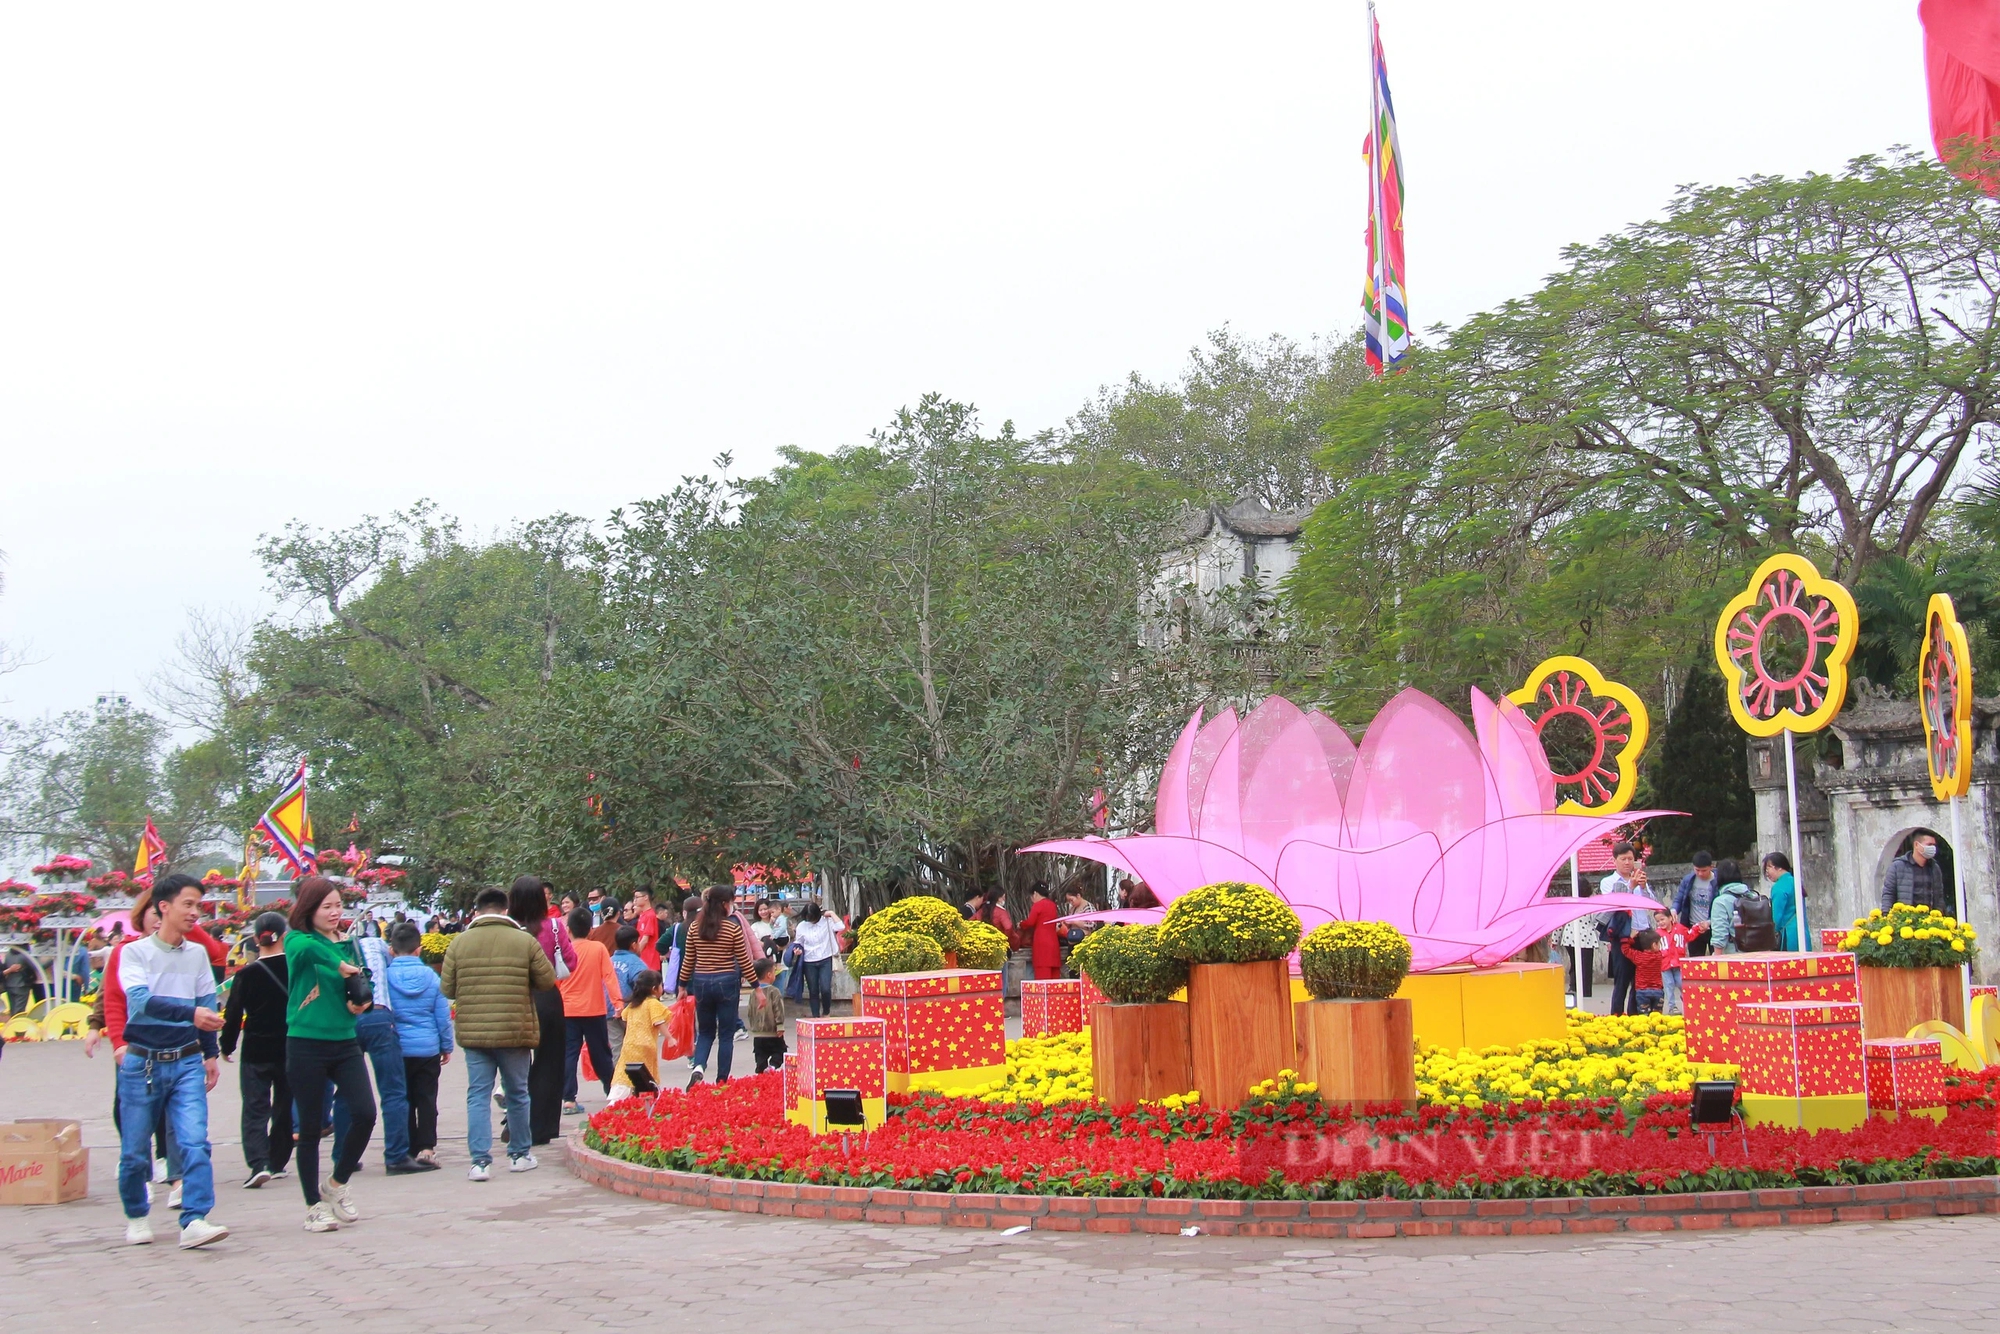 Hàng vạn người thập phương nườm nượp đổ về Đền Trần ở Nam Định dù chưa đến ngày chính lễ- Ảnh 7.